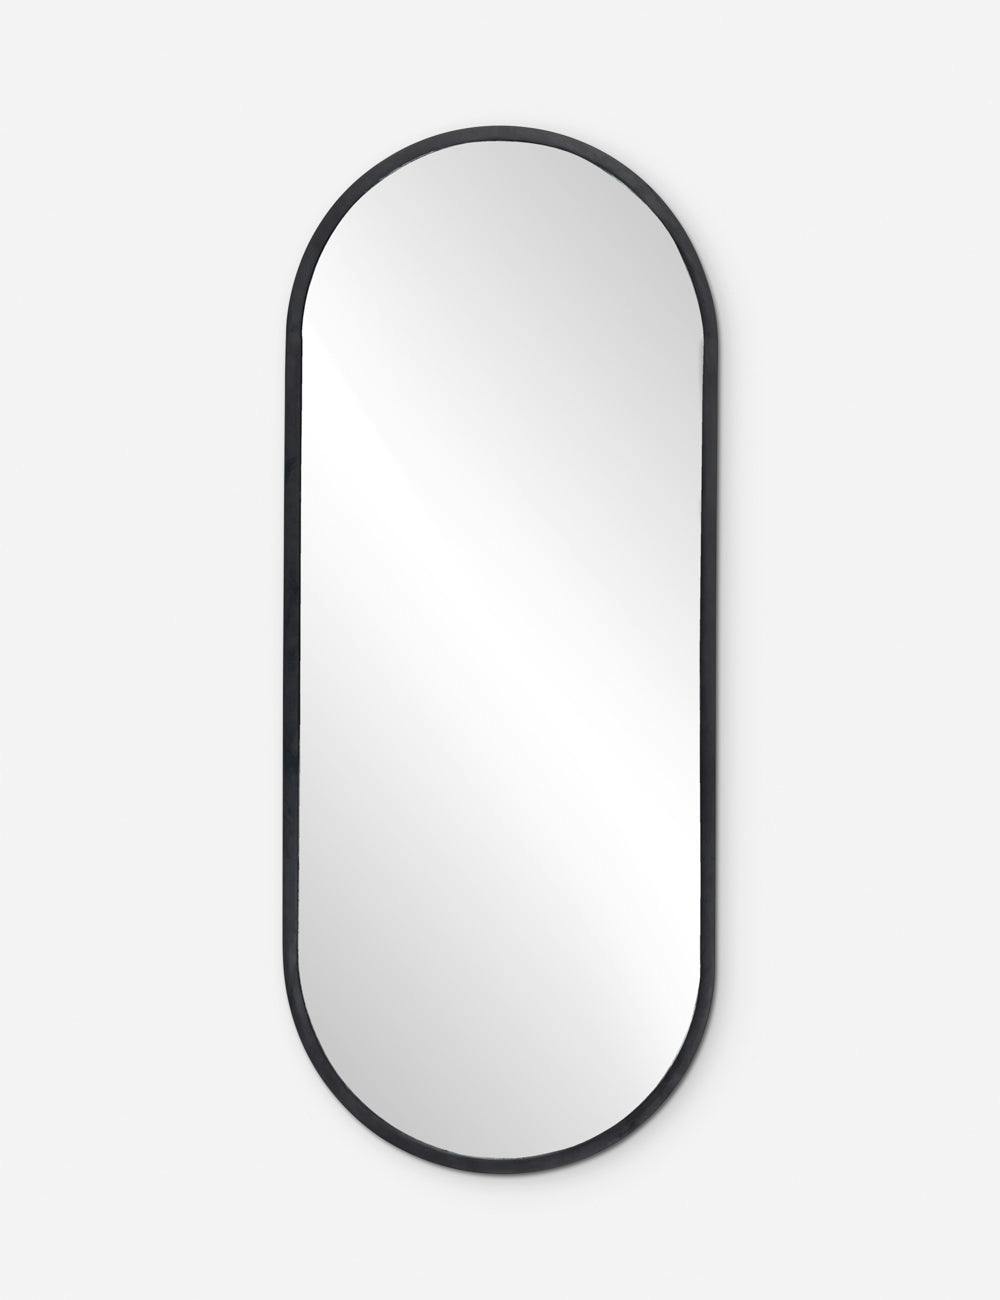 Sleek Rectangular Full-Length Mirror in Matte Black